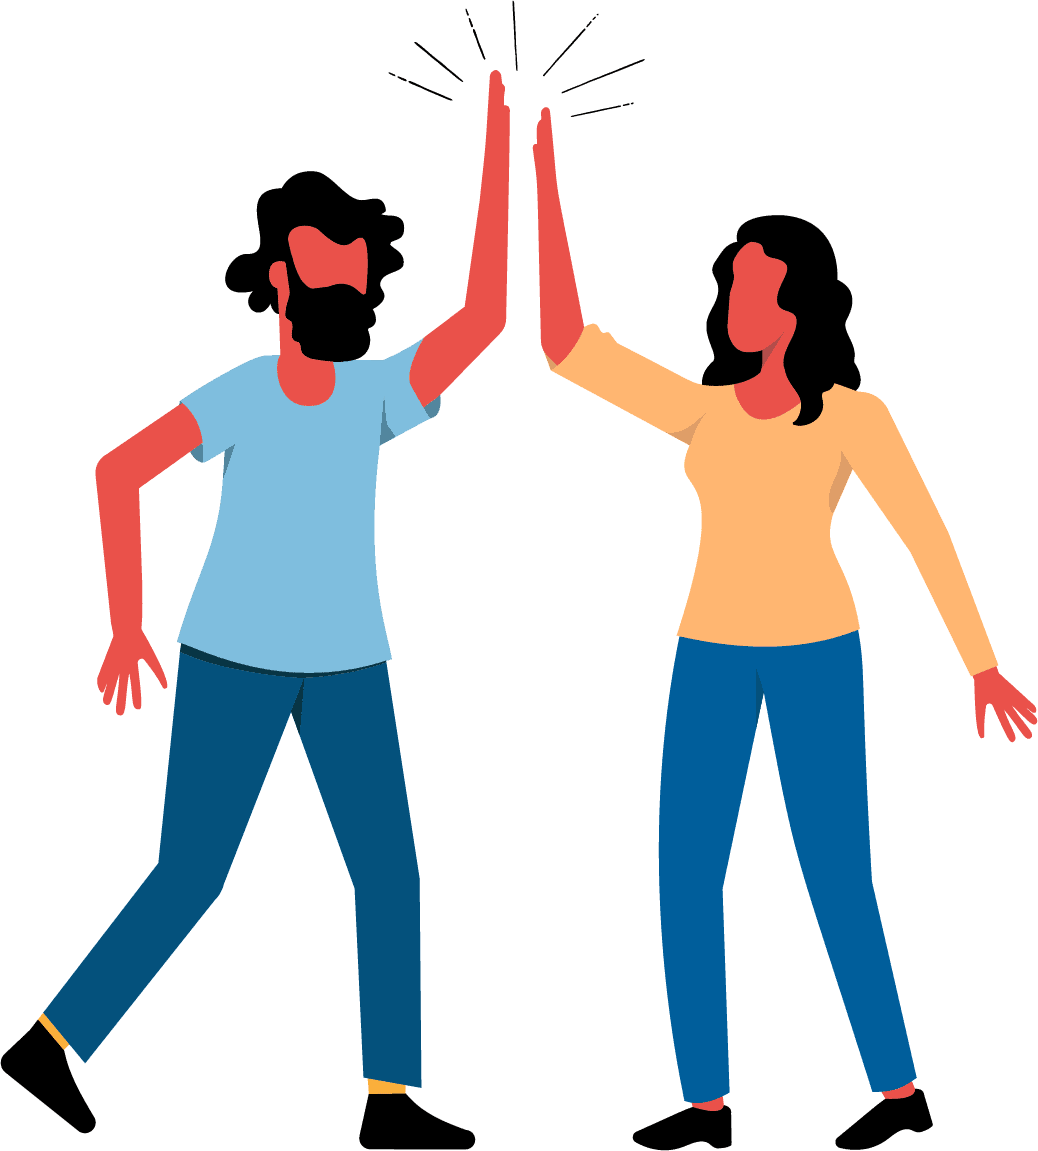 Dois adultos humanos usando o gesto comum de celebração ou saudação em que dois humanos batem na palma da mão aberta um do outro com os braços levantados.